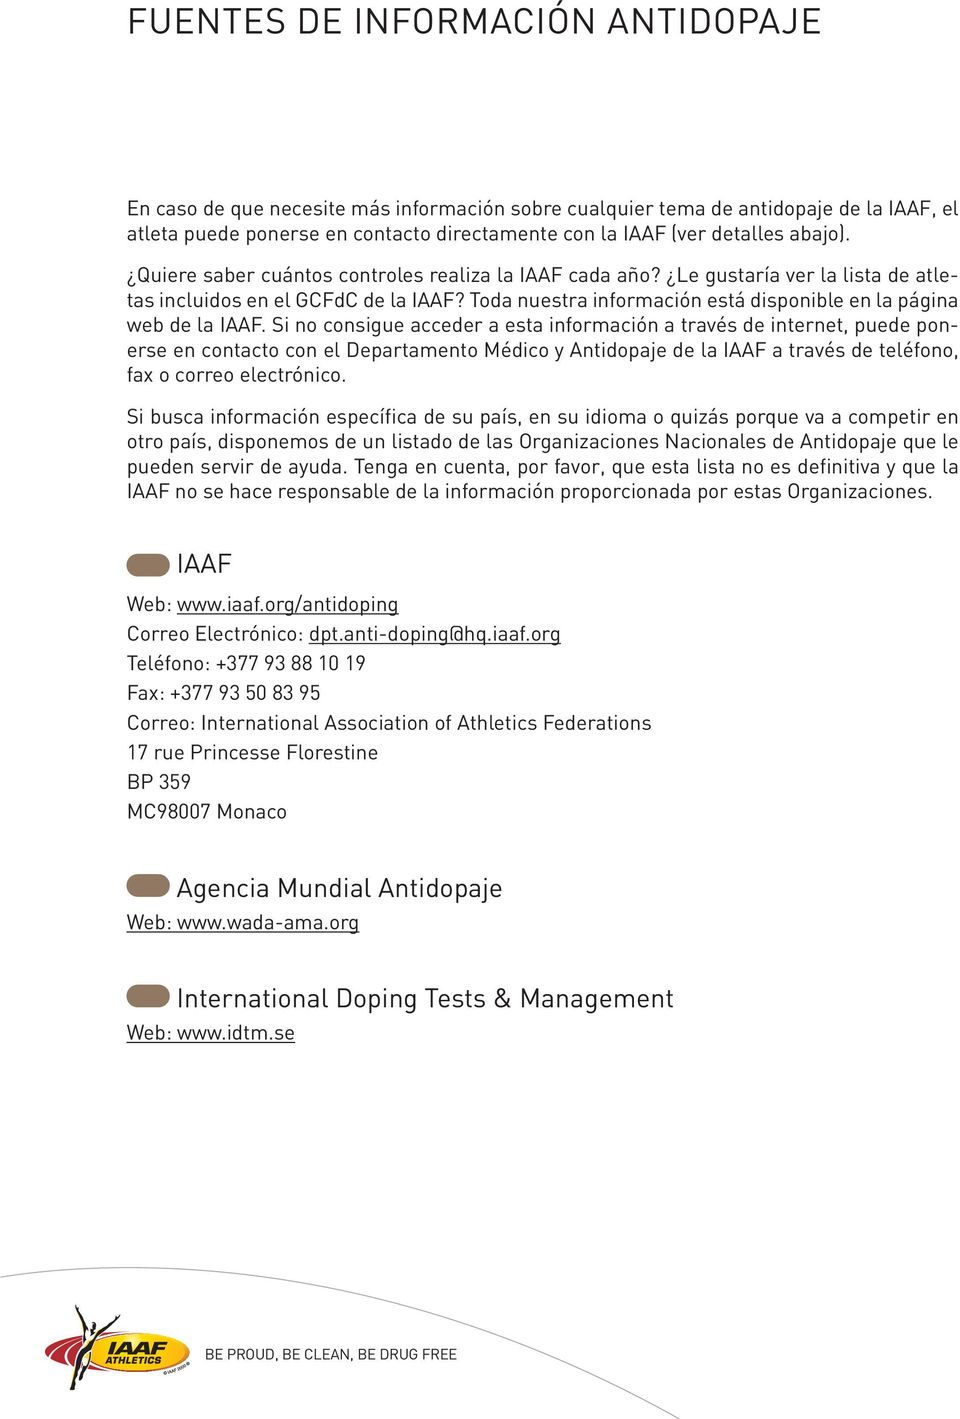 Toda nuestra información está disponible en la página web de la IAAF.